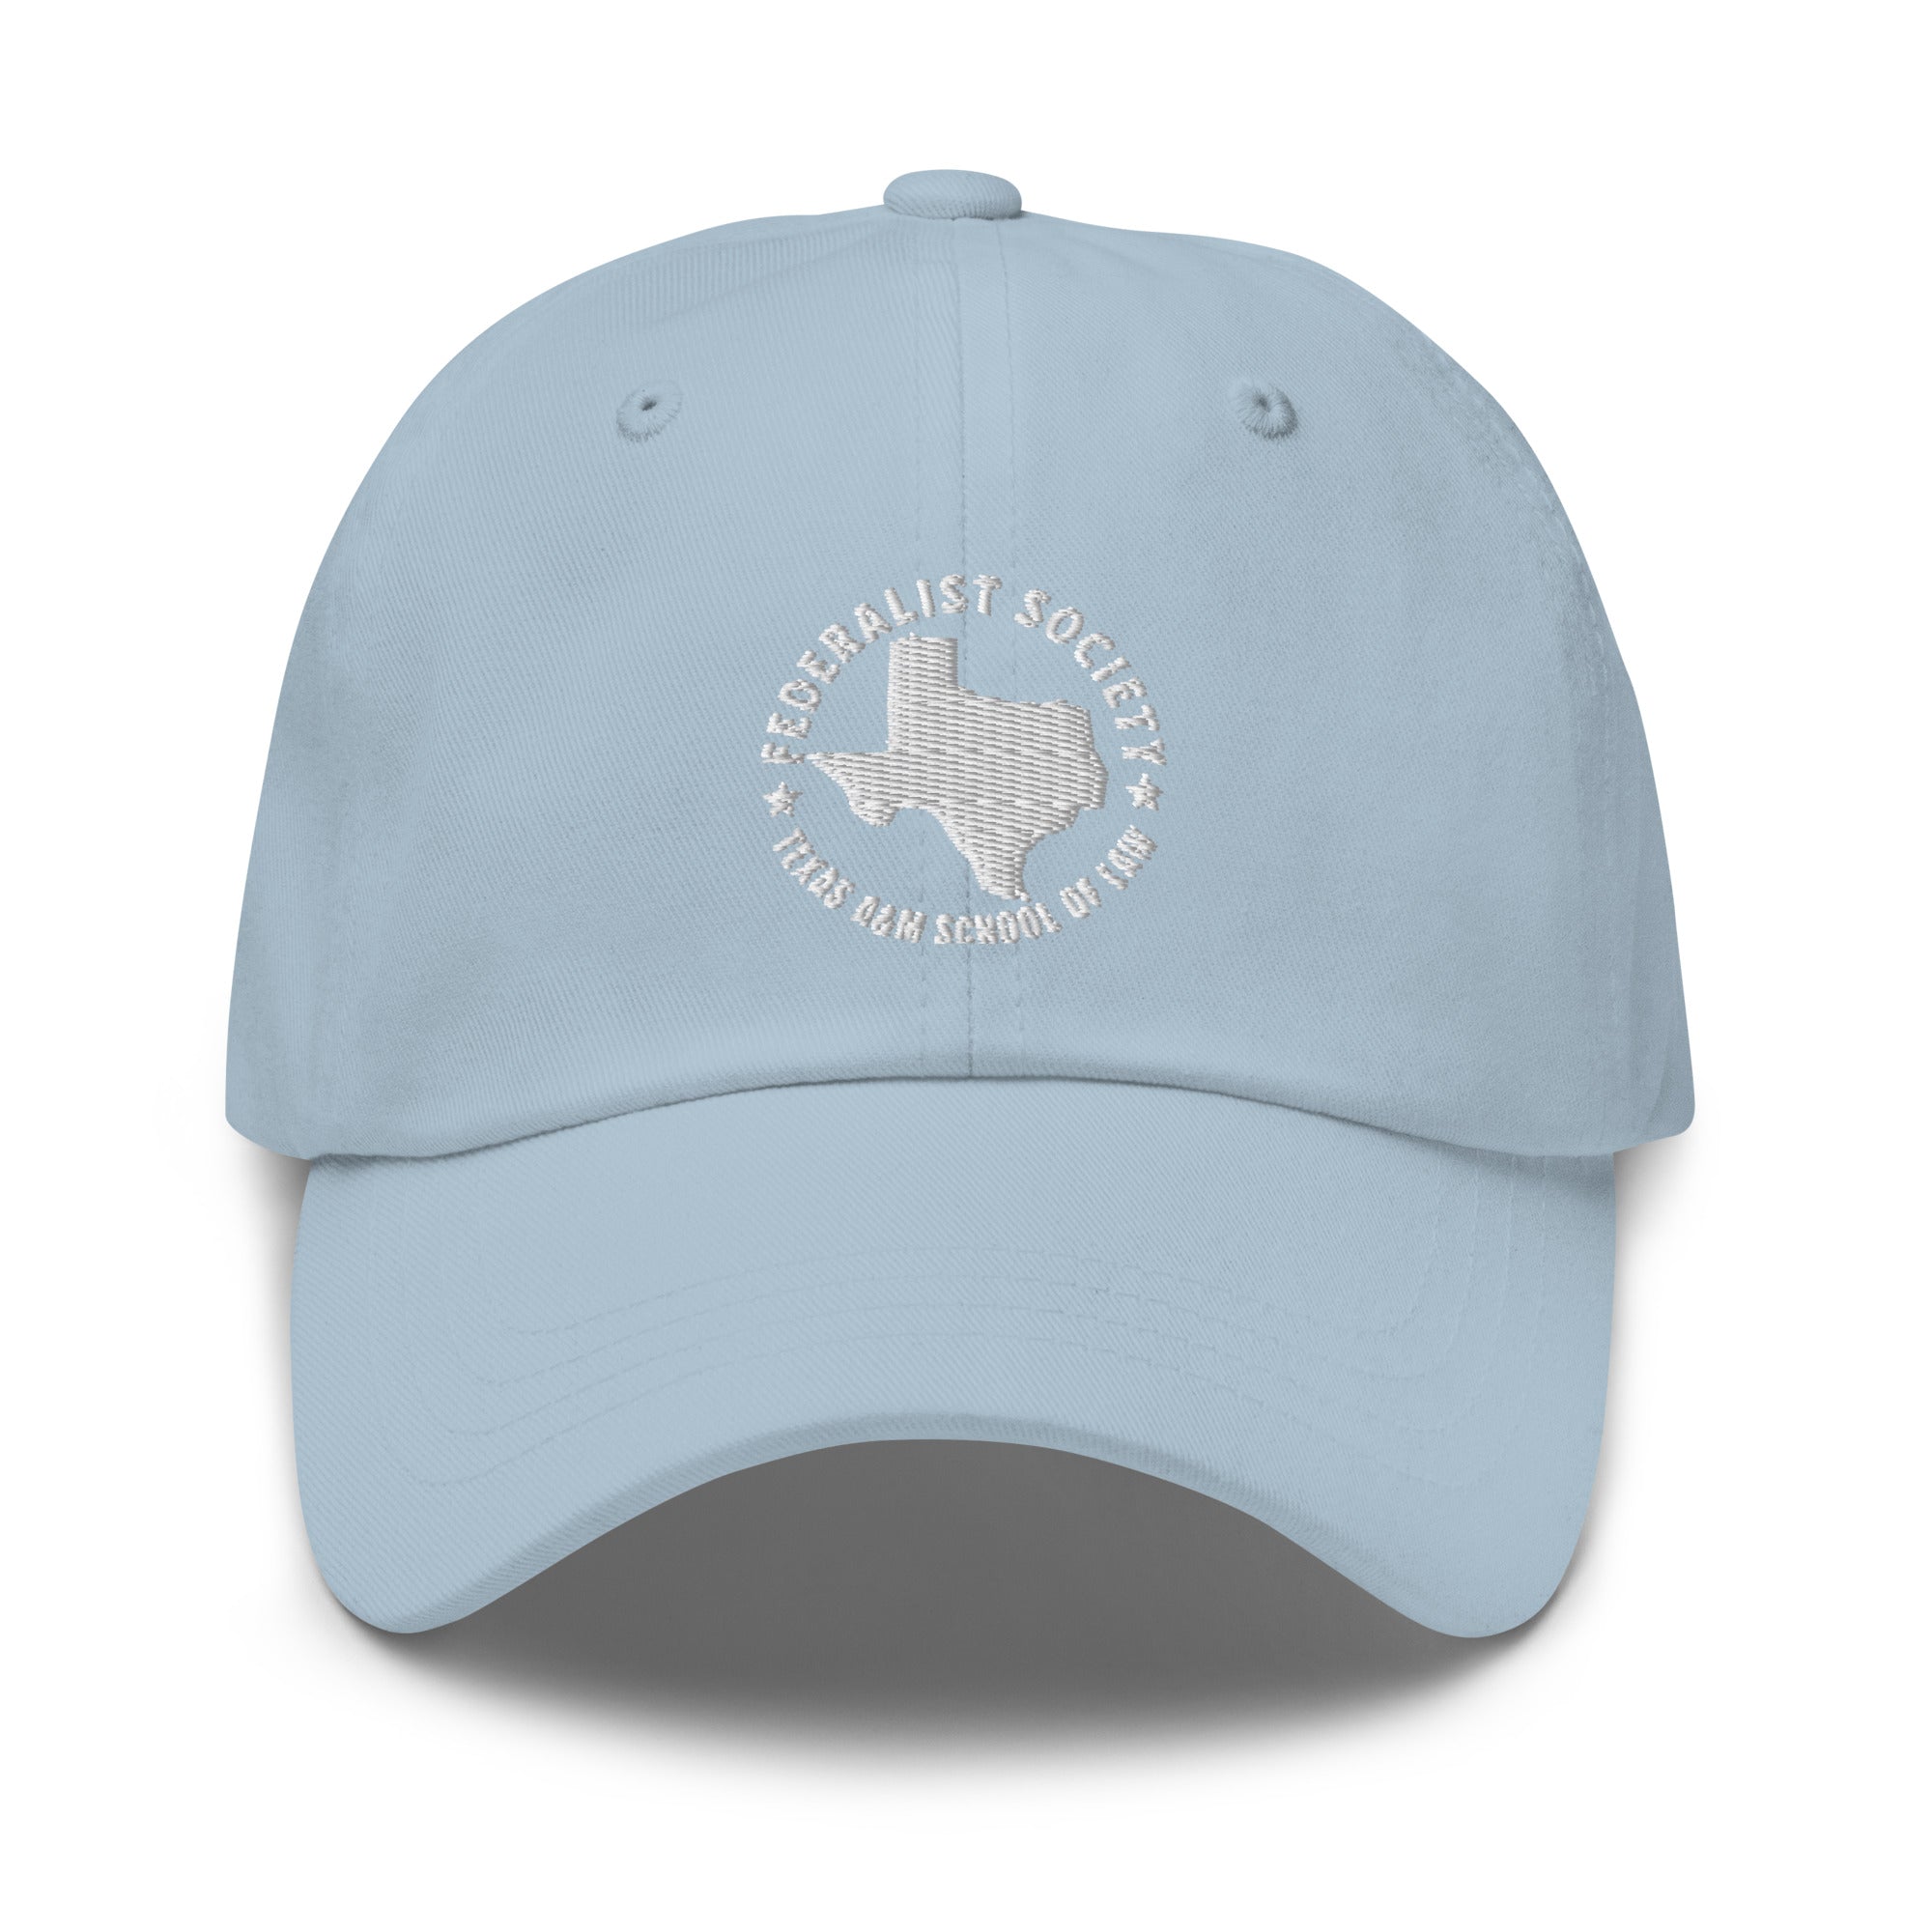 Hat (Texas A&M Fed Soc)